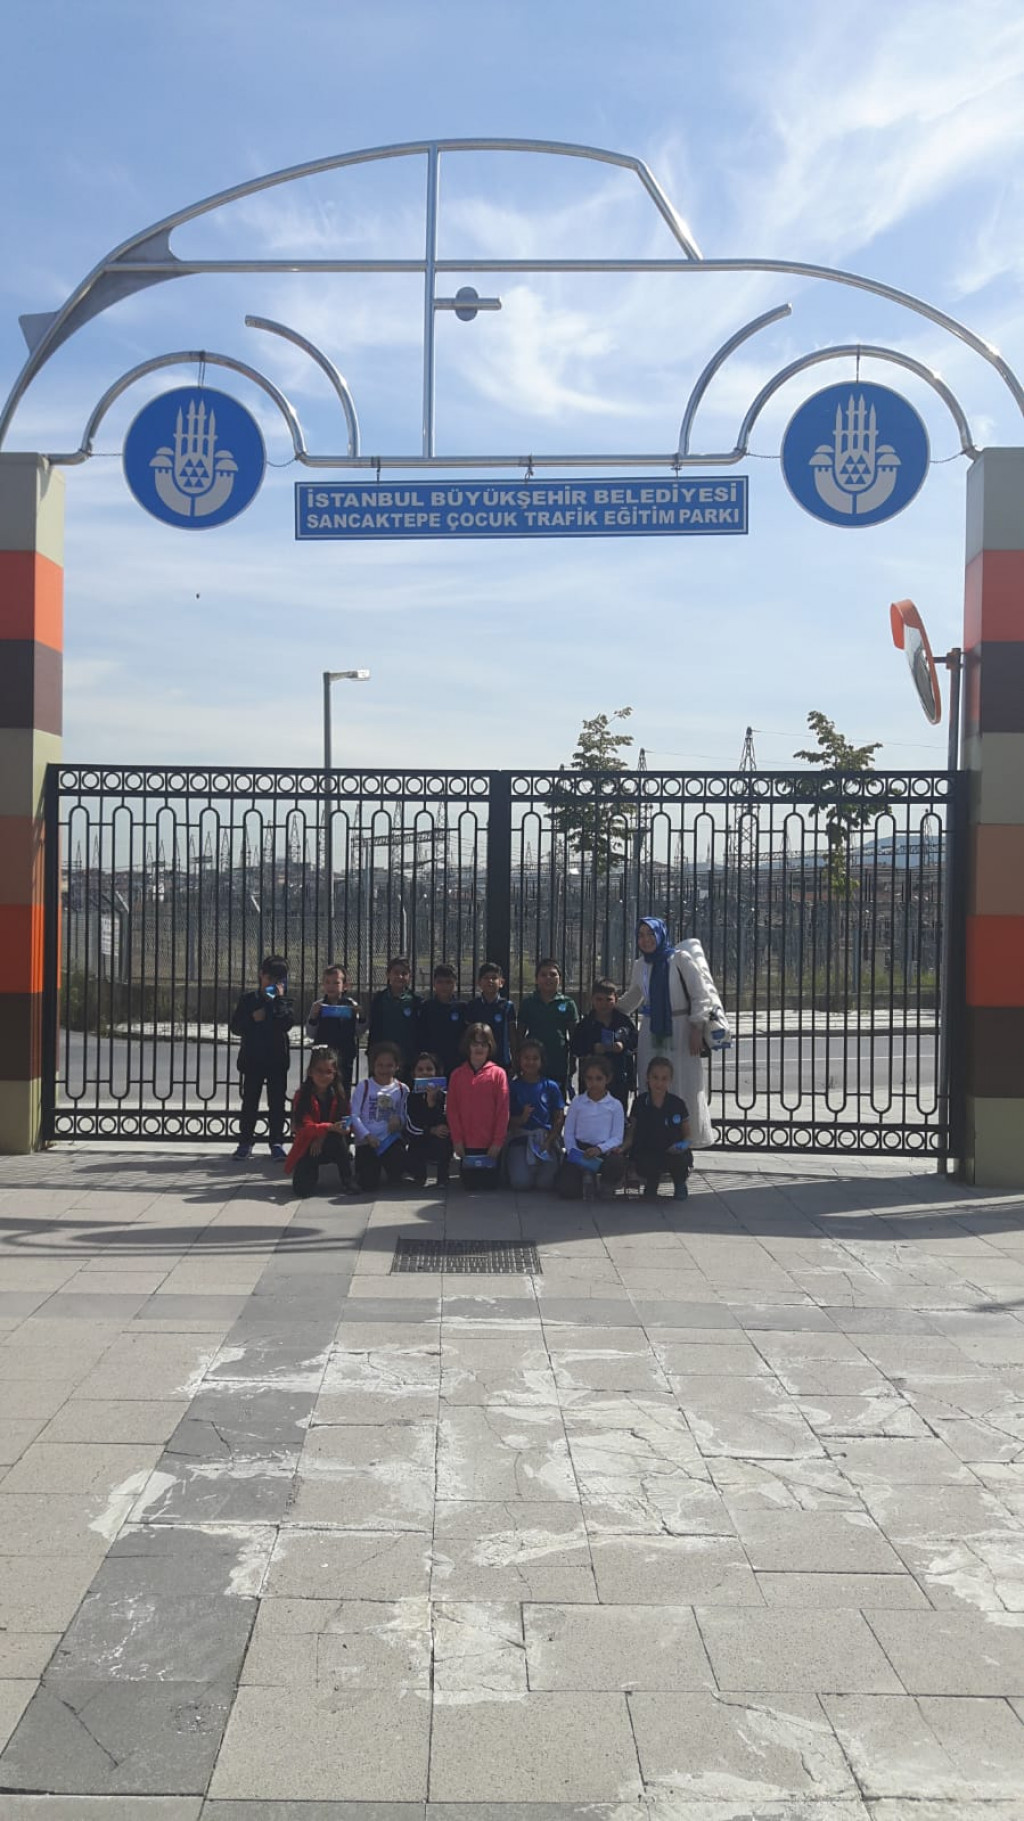 İyi Dersler Okulları Trafik Parkında | İstanbul Pendik İlkokulu v...